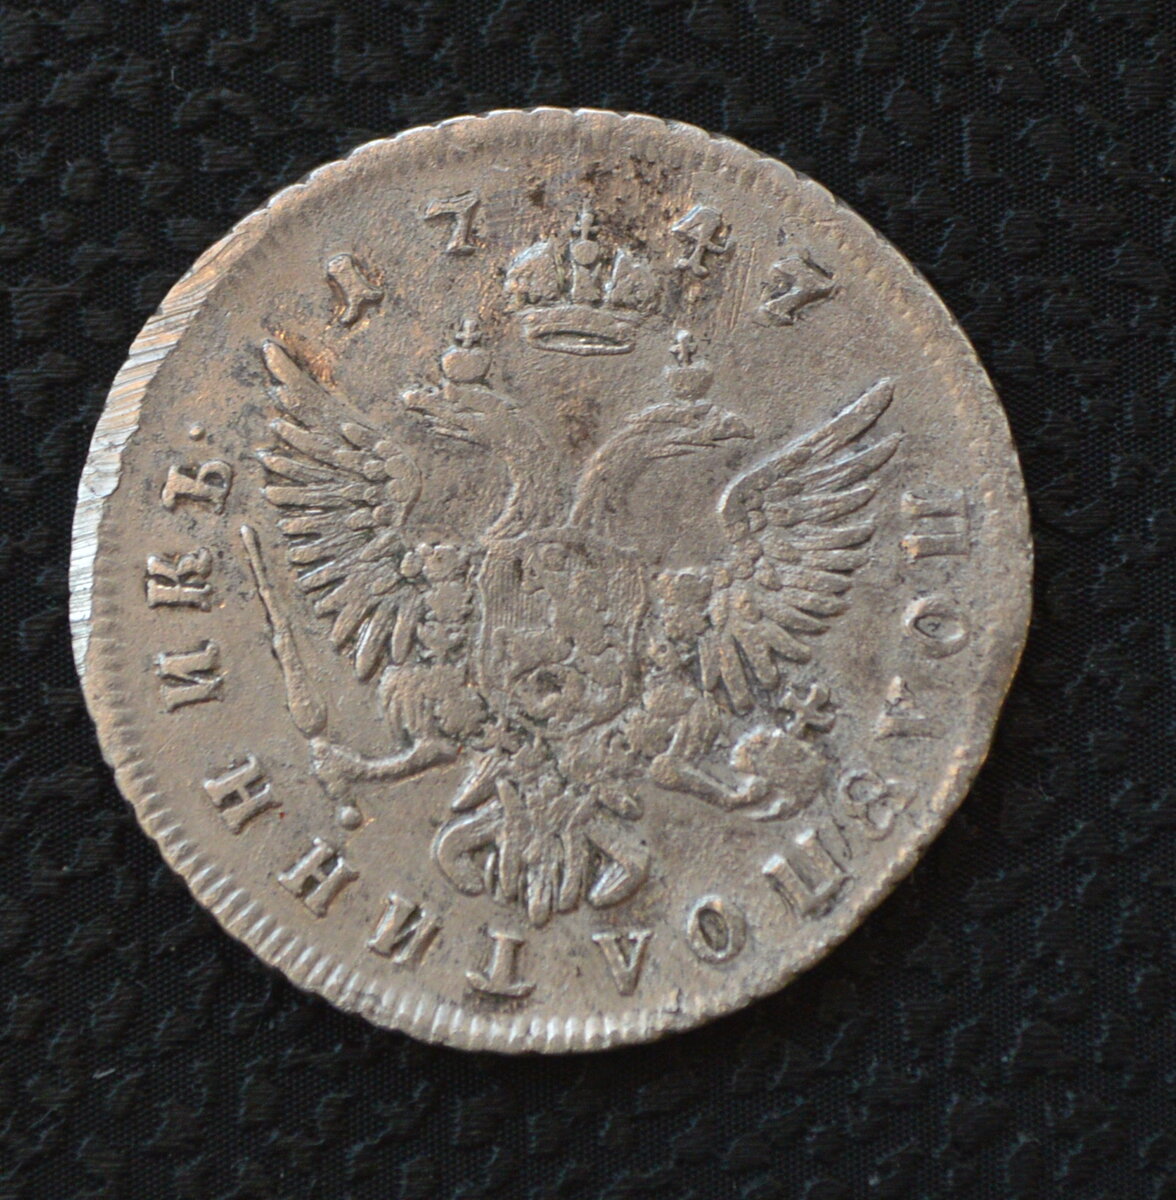 Монета рубль 1750 года UNC. Серебряные монеты царской России с 1700-1917 года. Царские монеты 1750 года.